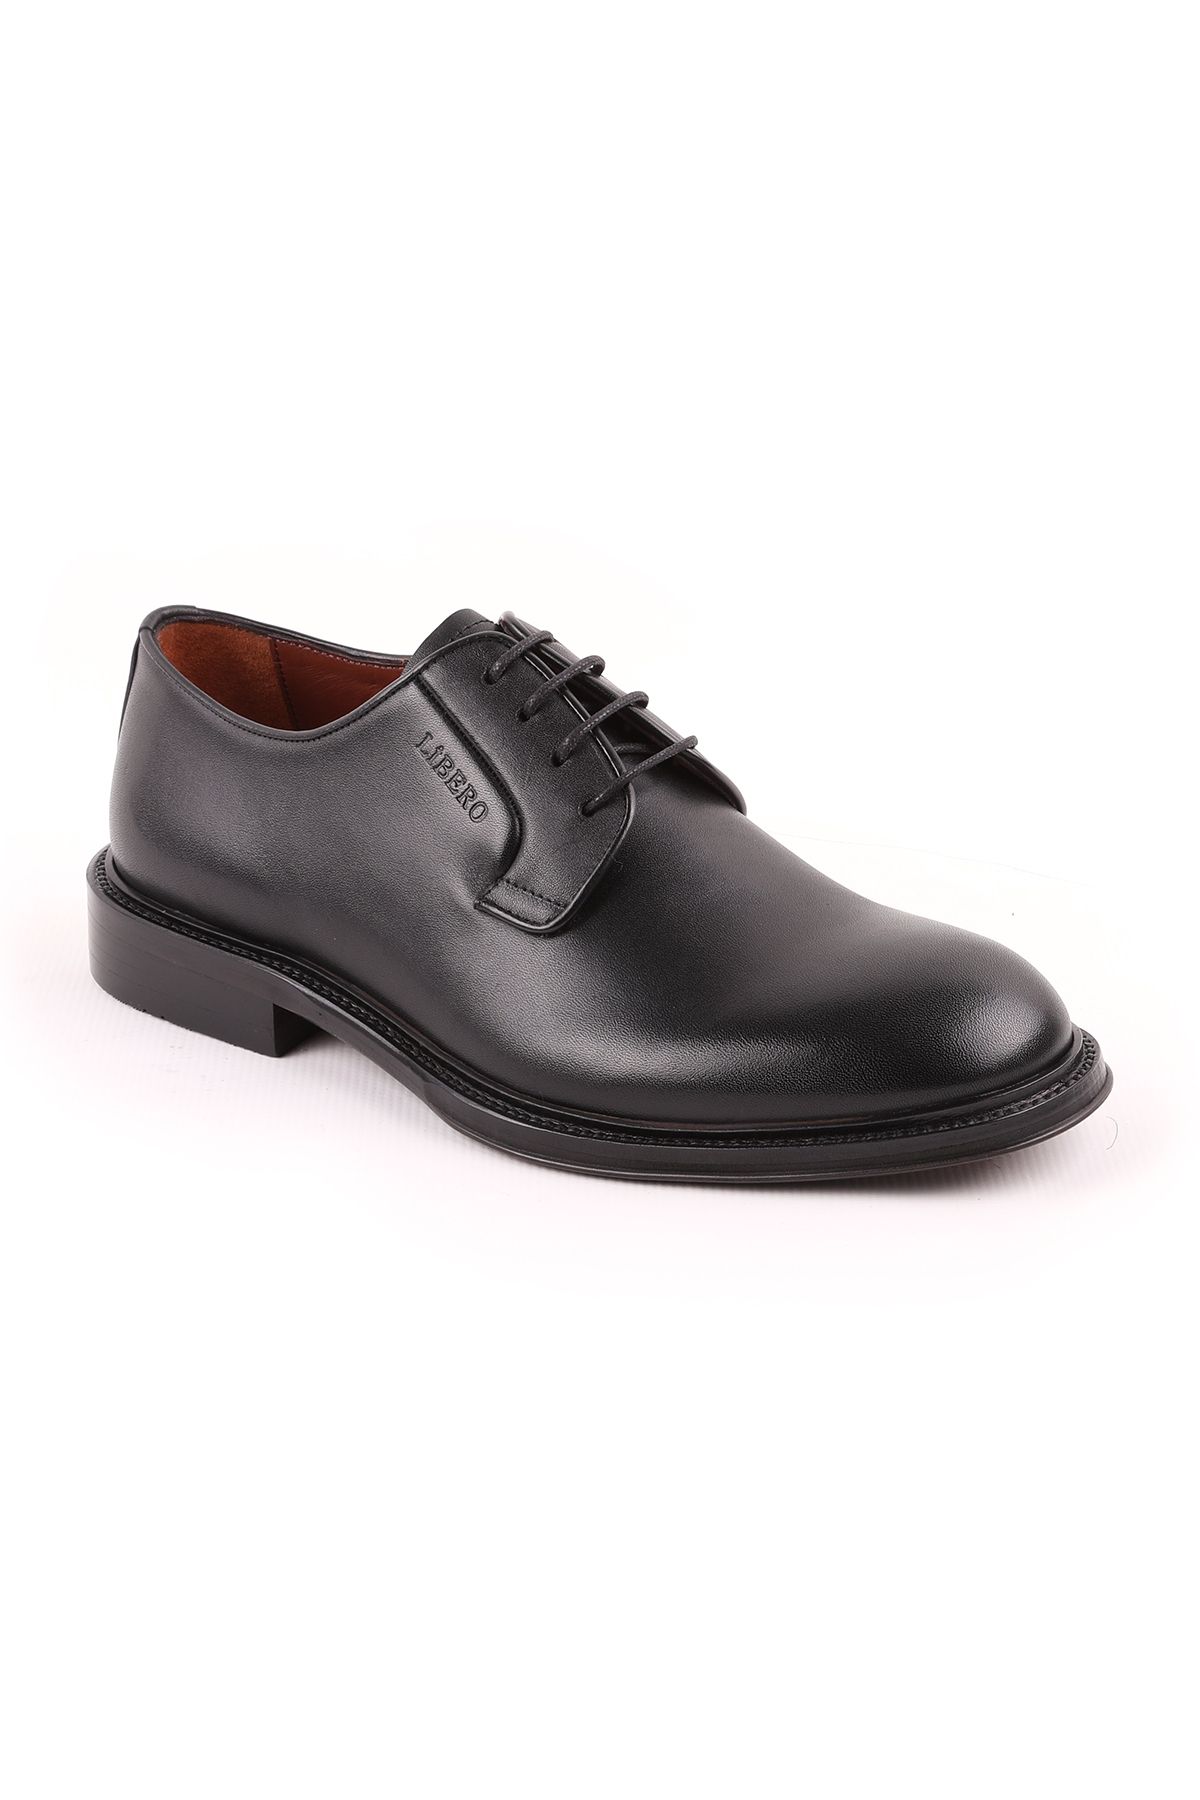 Libero L5232 Klasik Erkek Ayakkabı Siyah